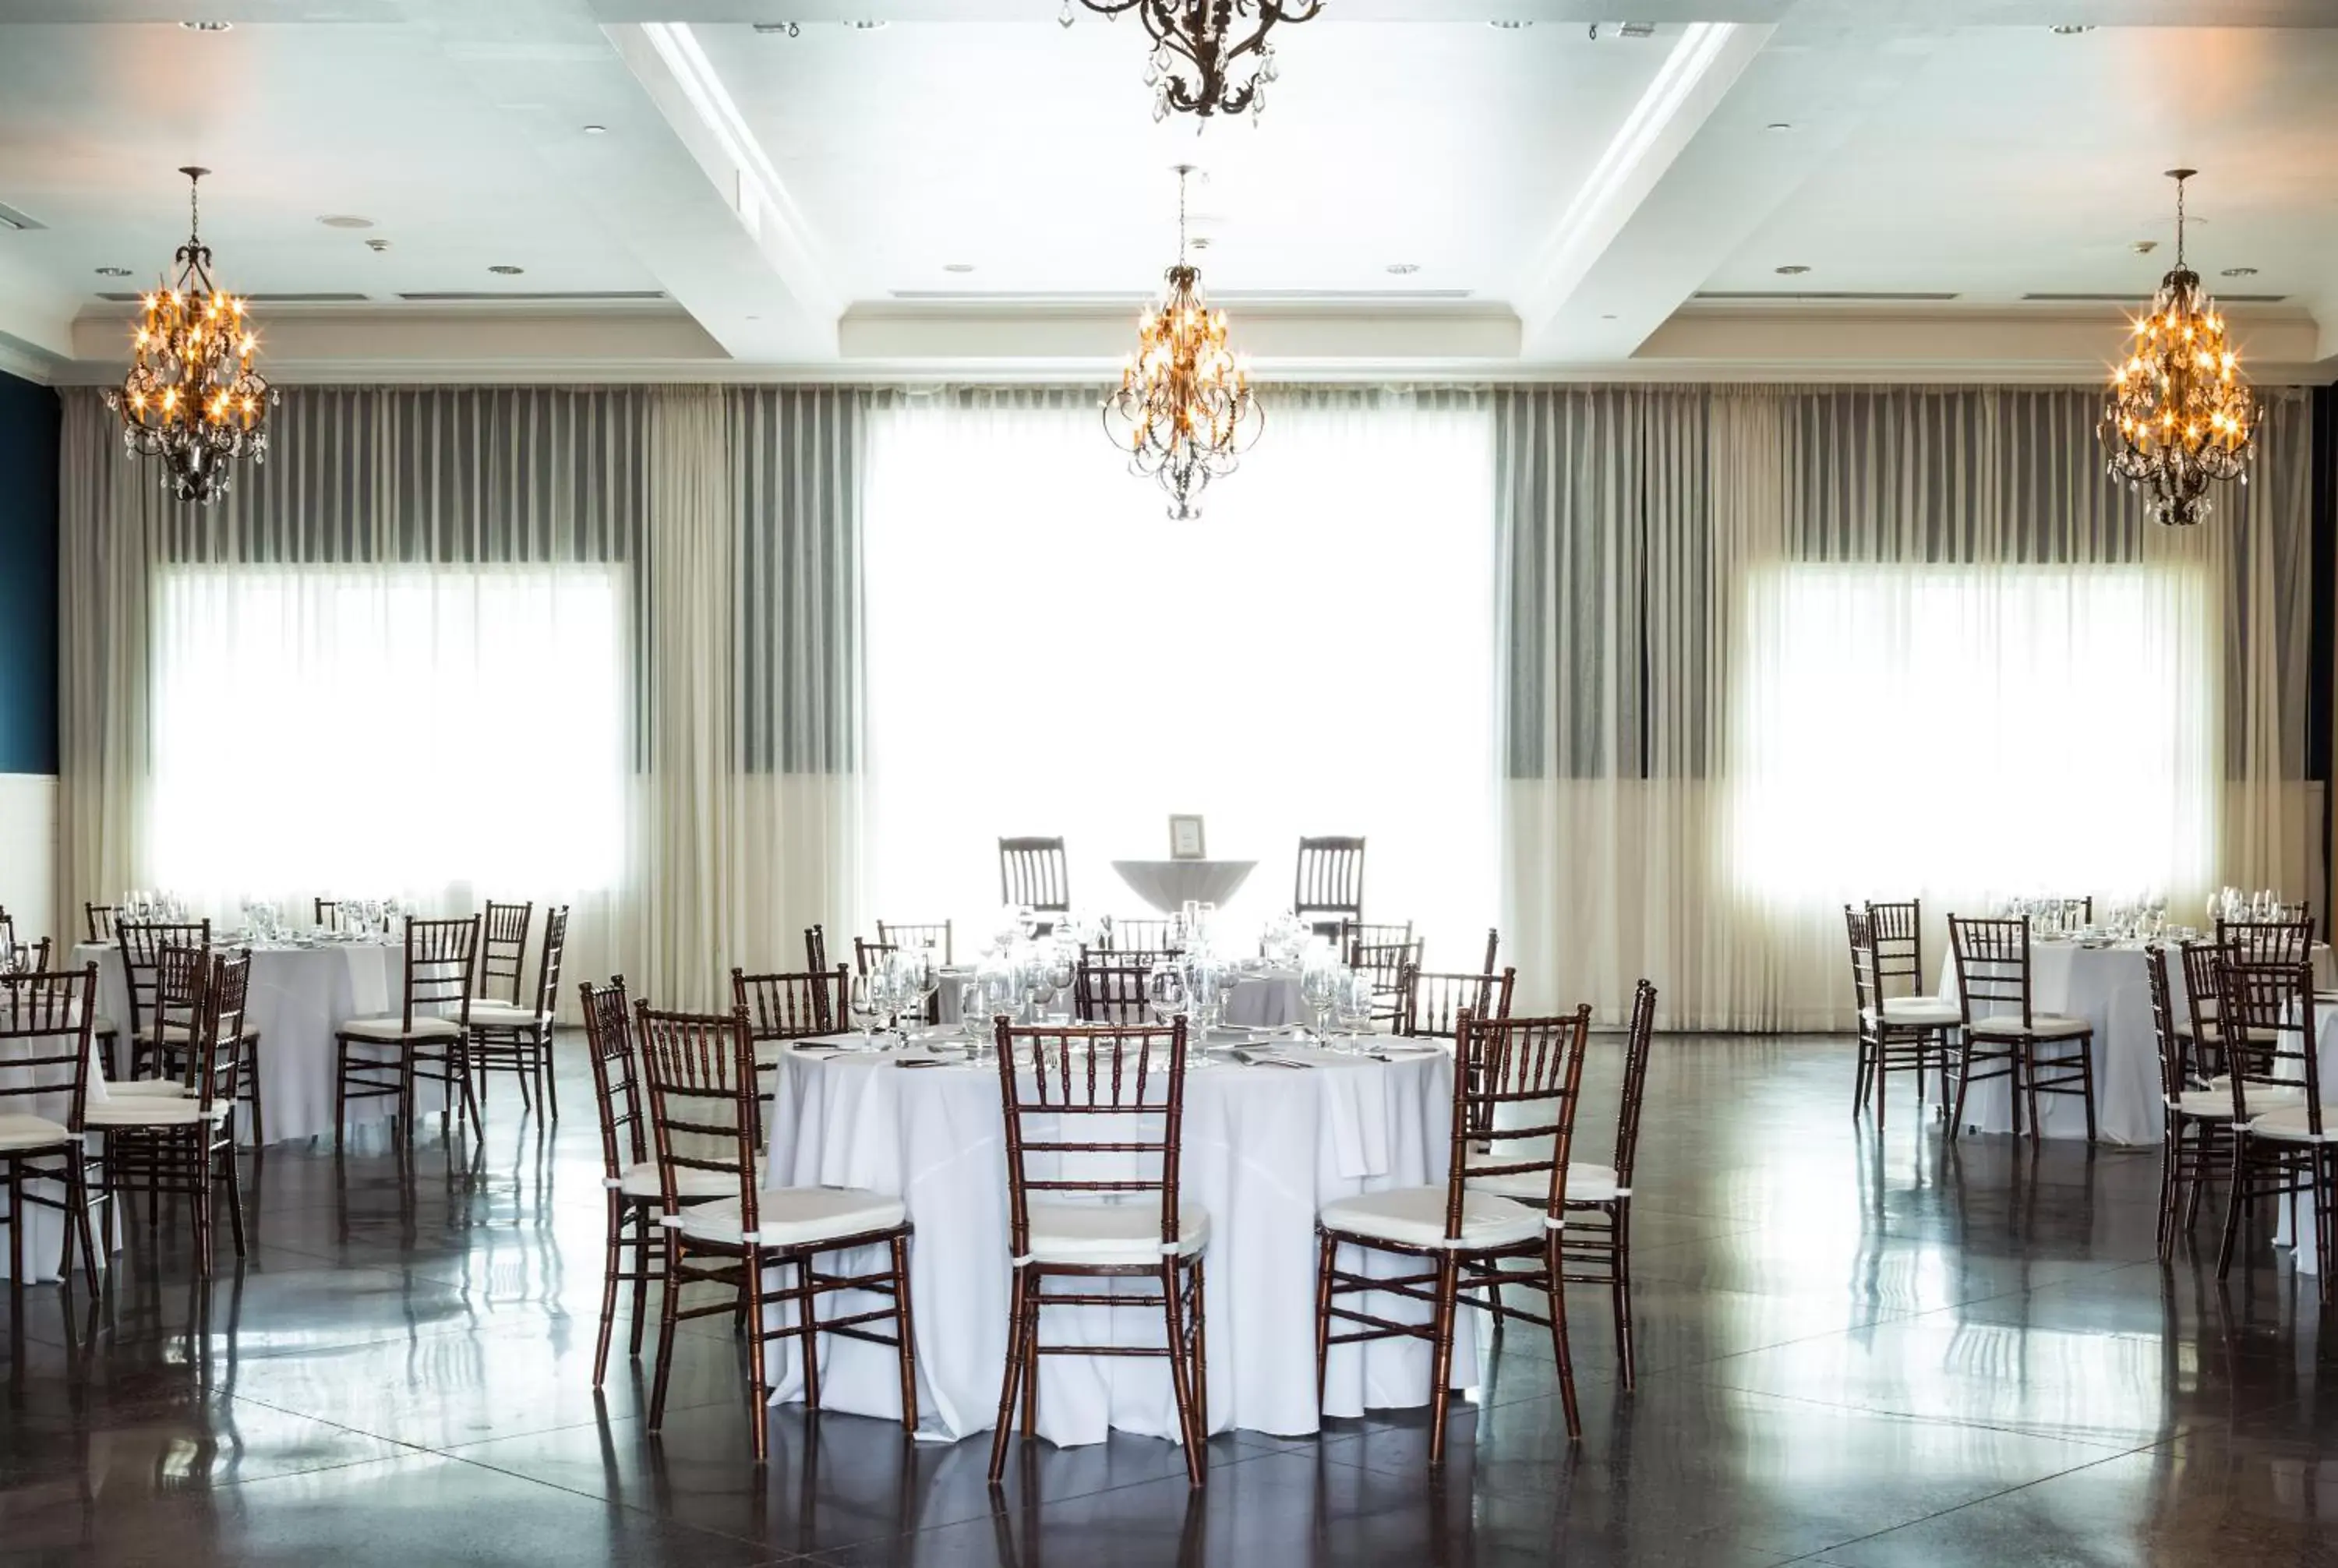 Banquet/Function facilities, Banquet Facilities in Hotel Ella